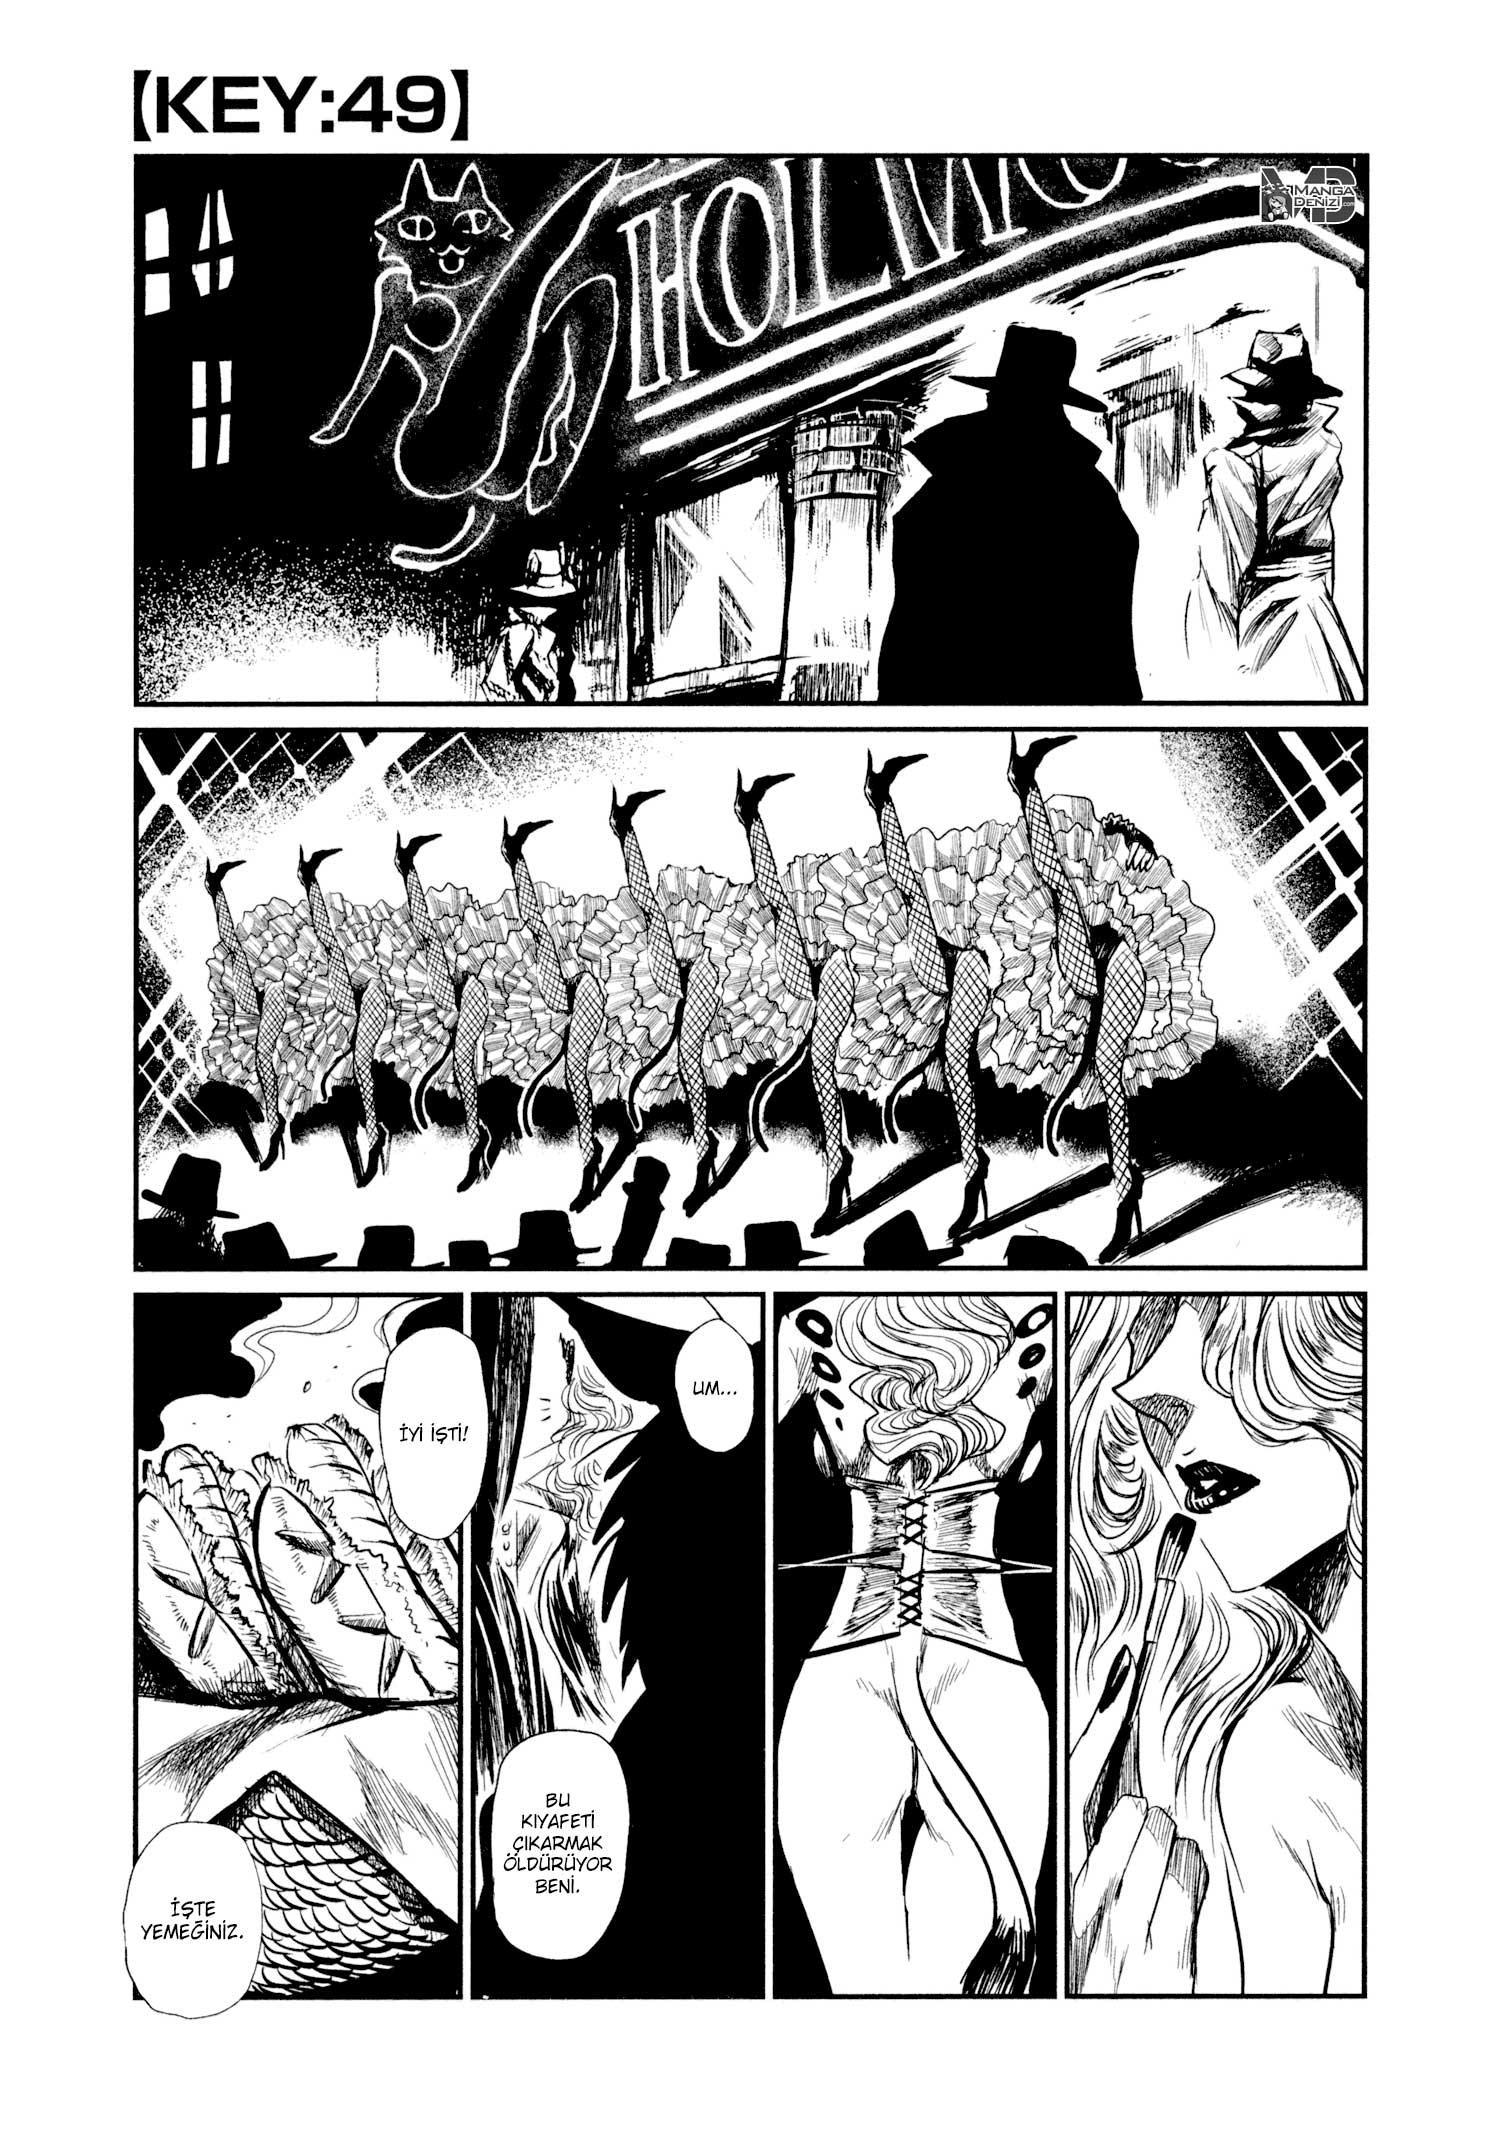 Keyman: The Hand of Judgement mangasının 49 bölümünün 2. sayfasını okuyorsunuz.